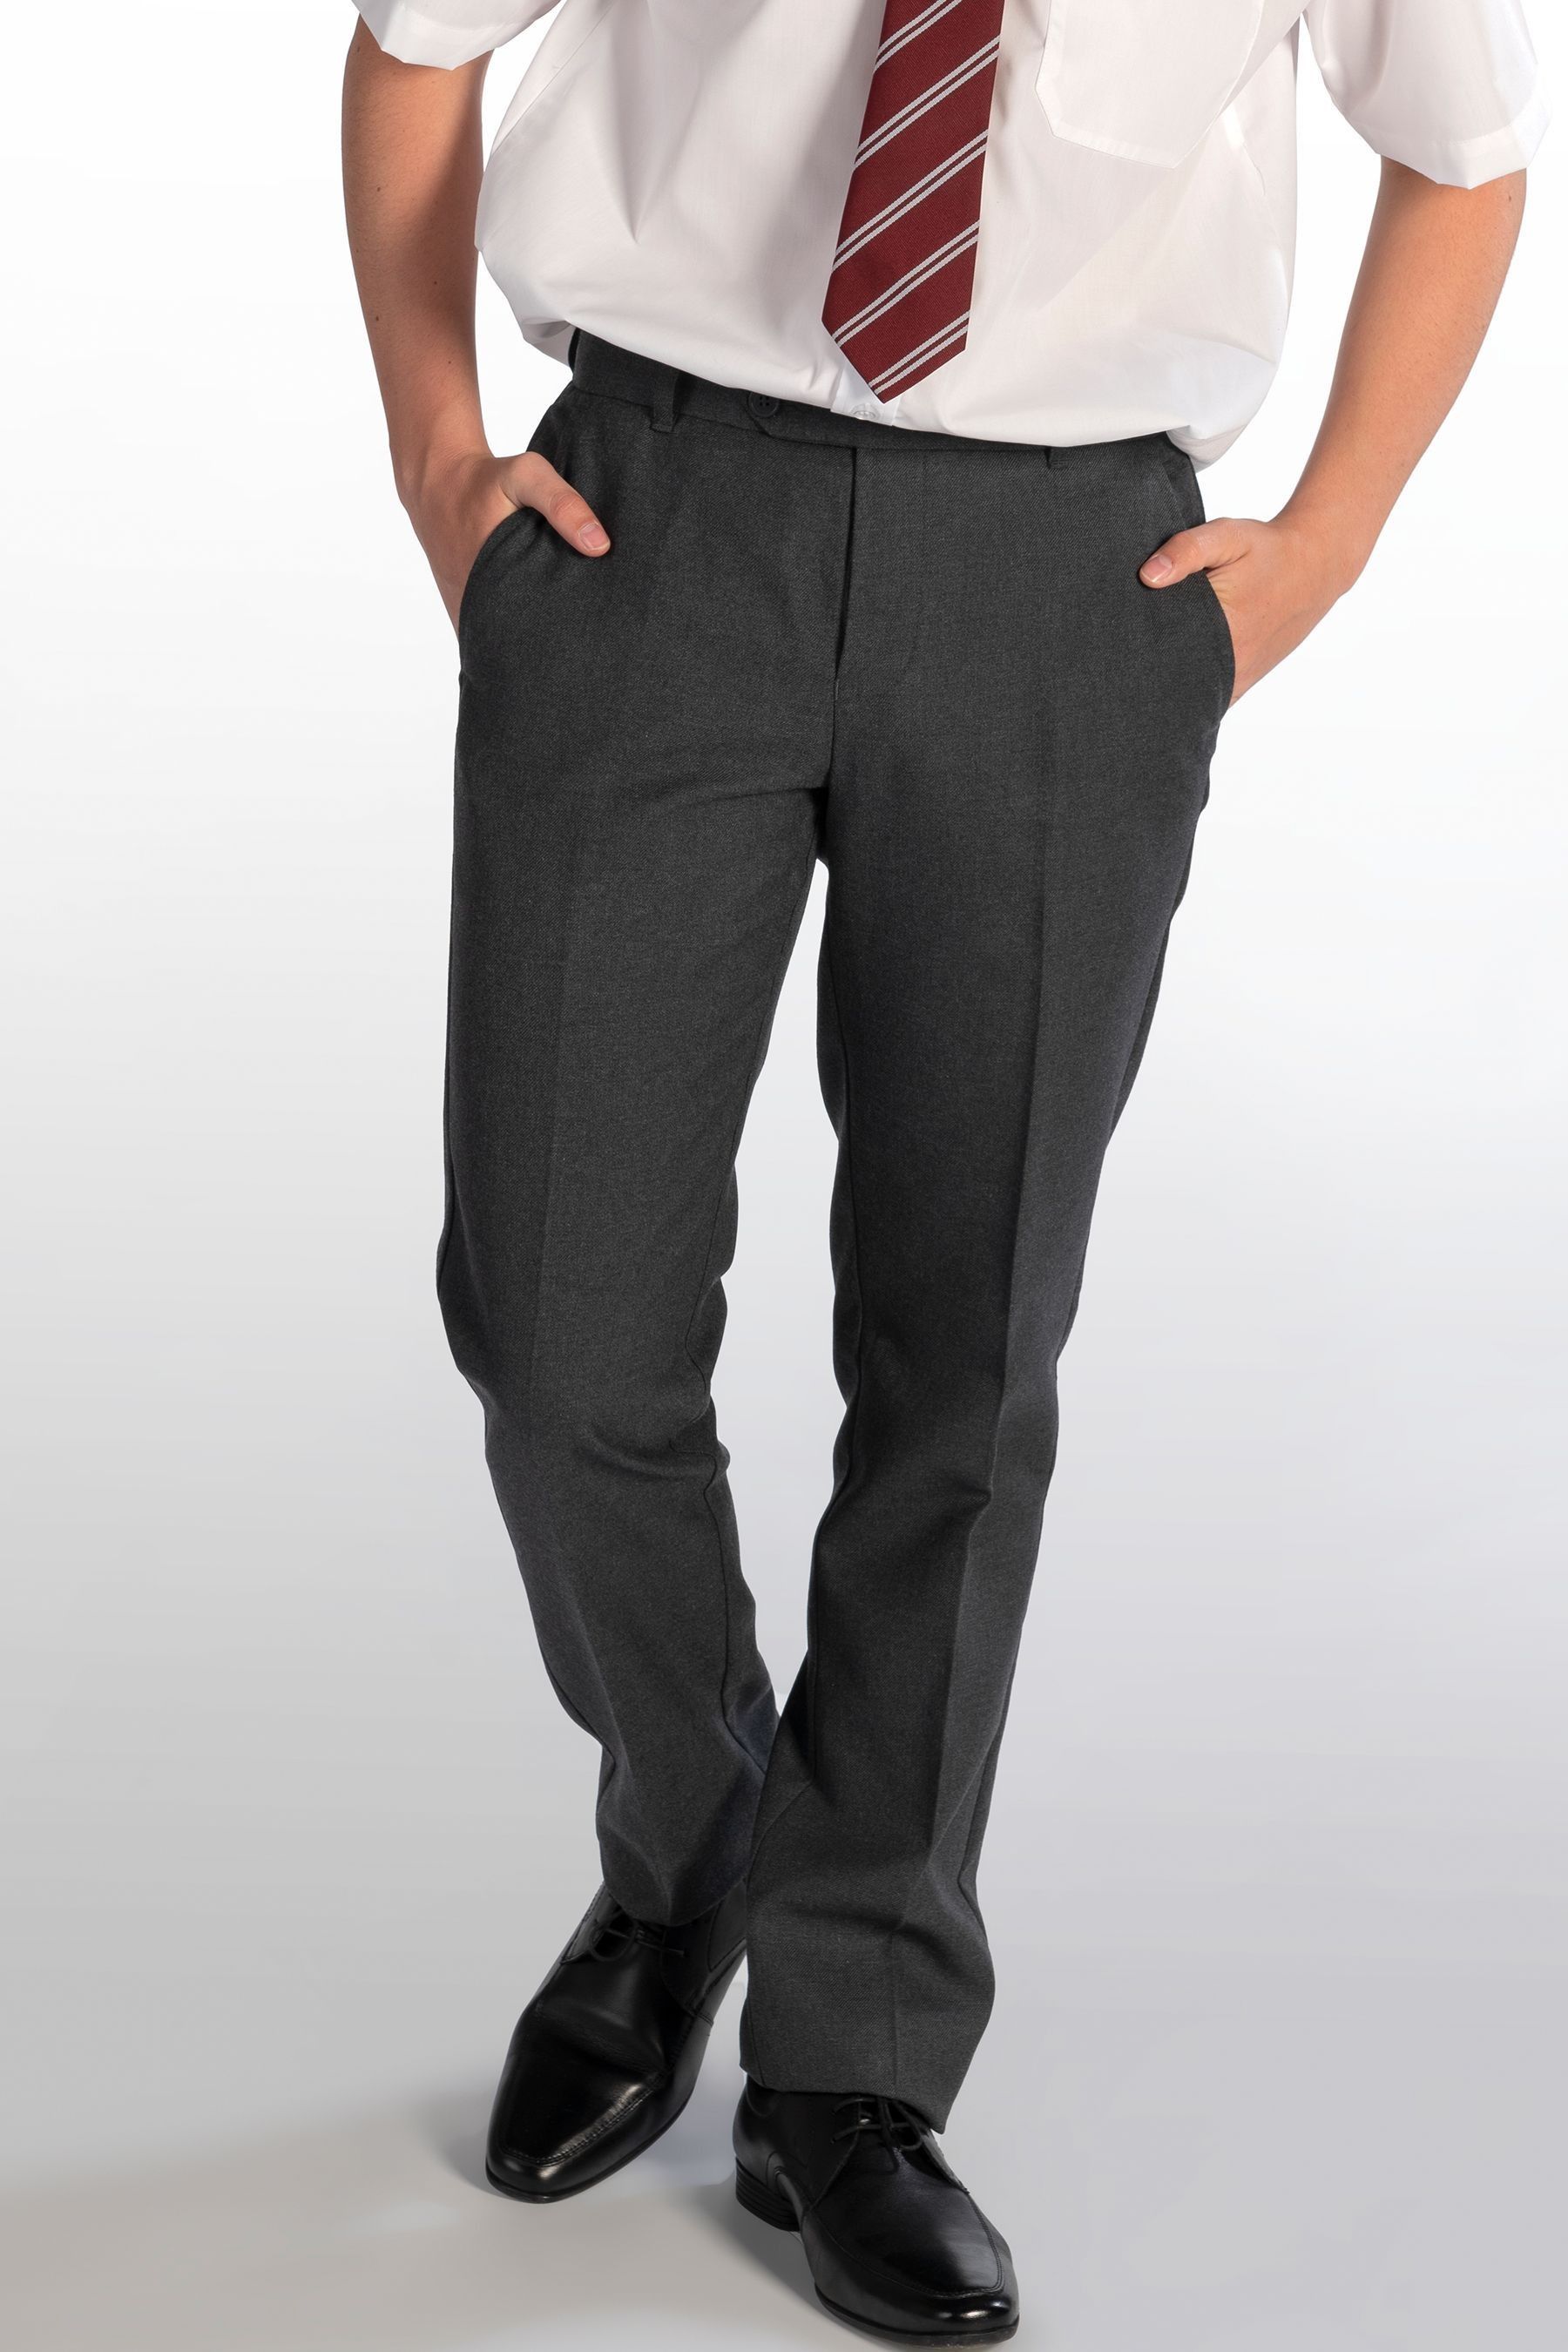 Серые школьные брюки для мальчиков Senior Classic Trutex, серый